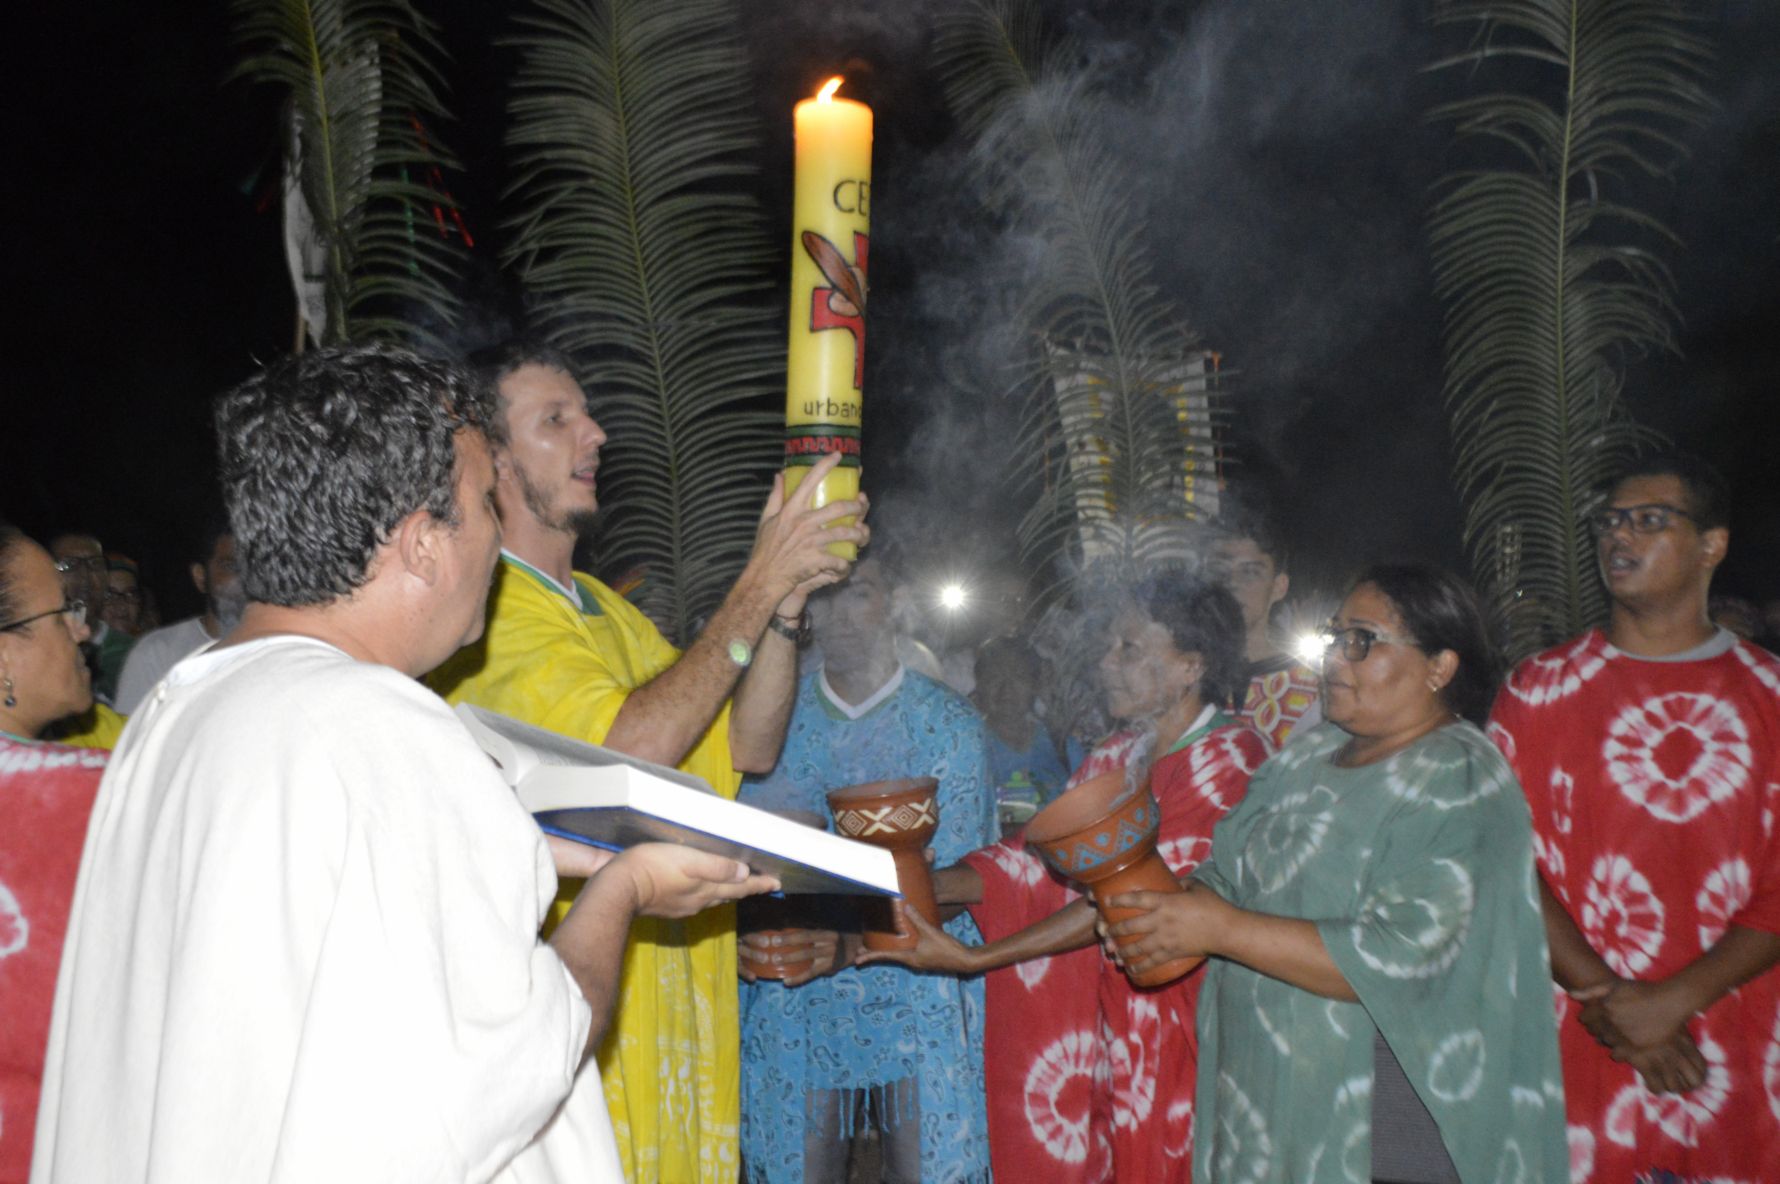 Celebração Martirial Cebs  celebra a fé e a luta em São Felix do Araguaia